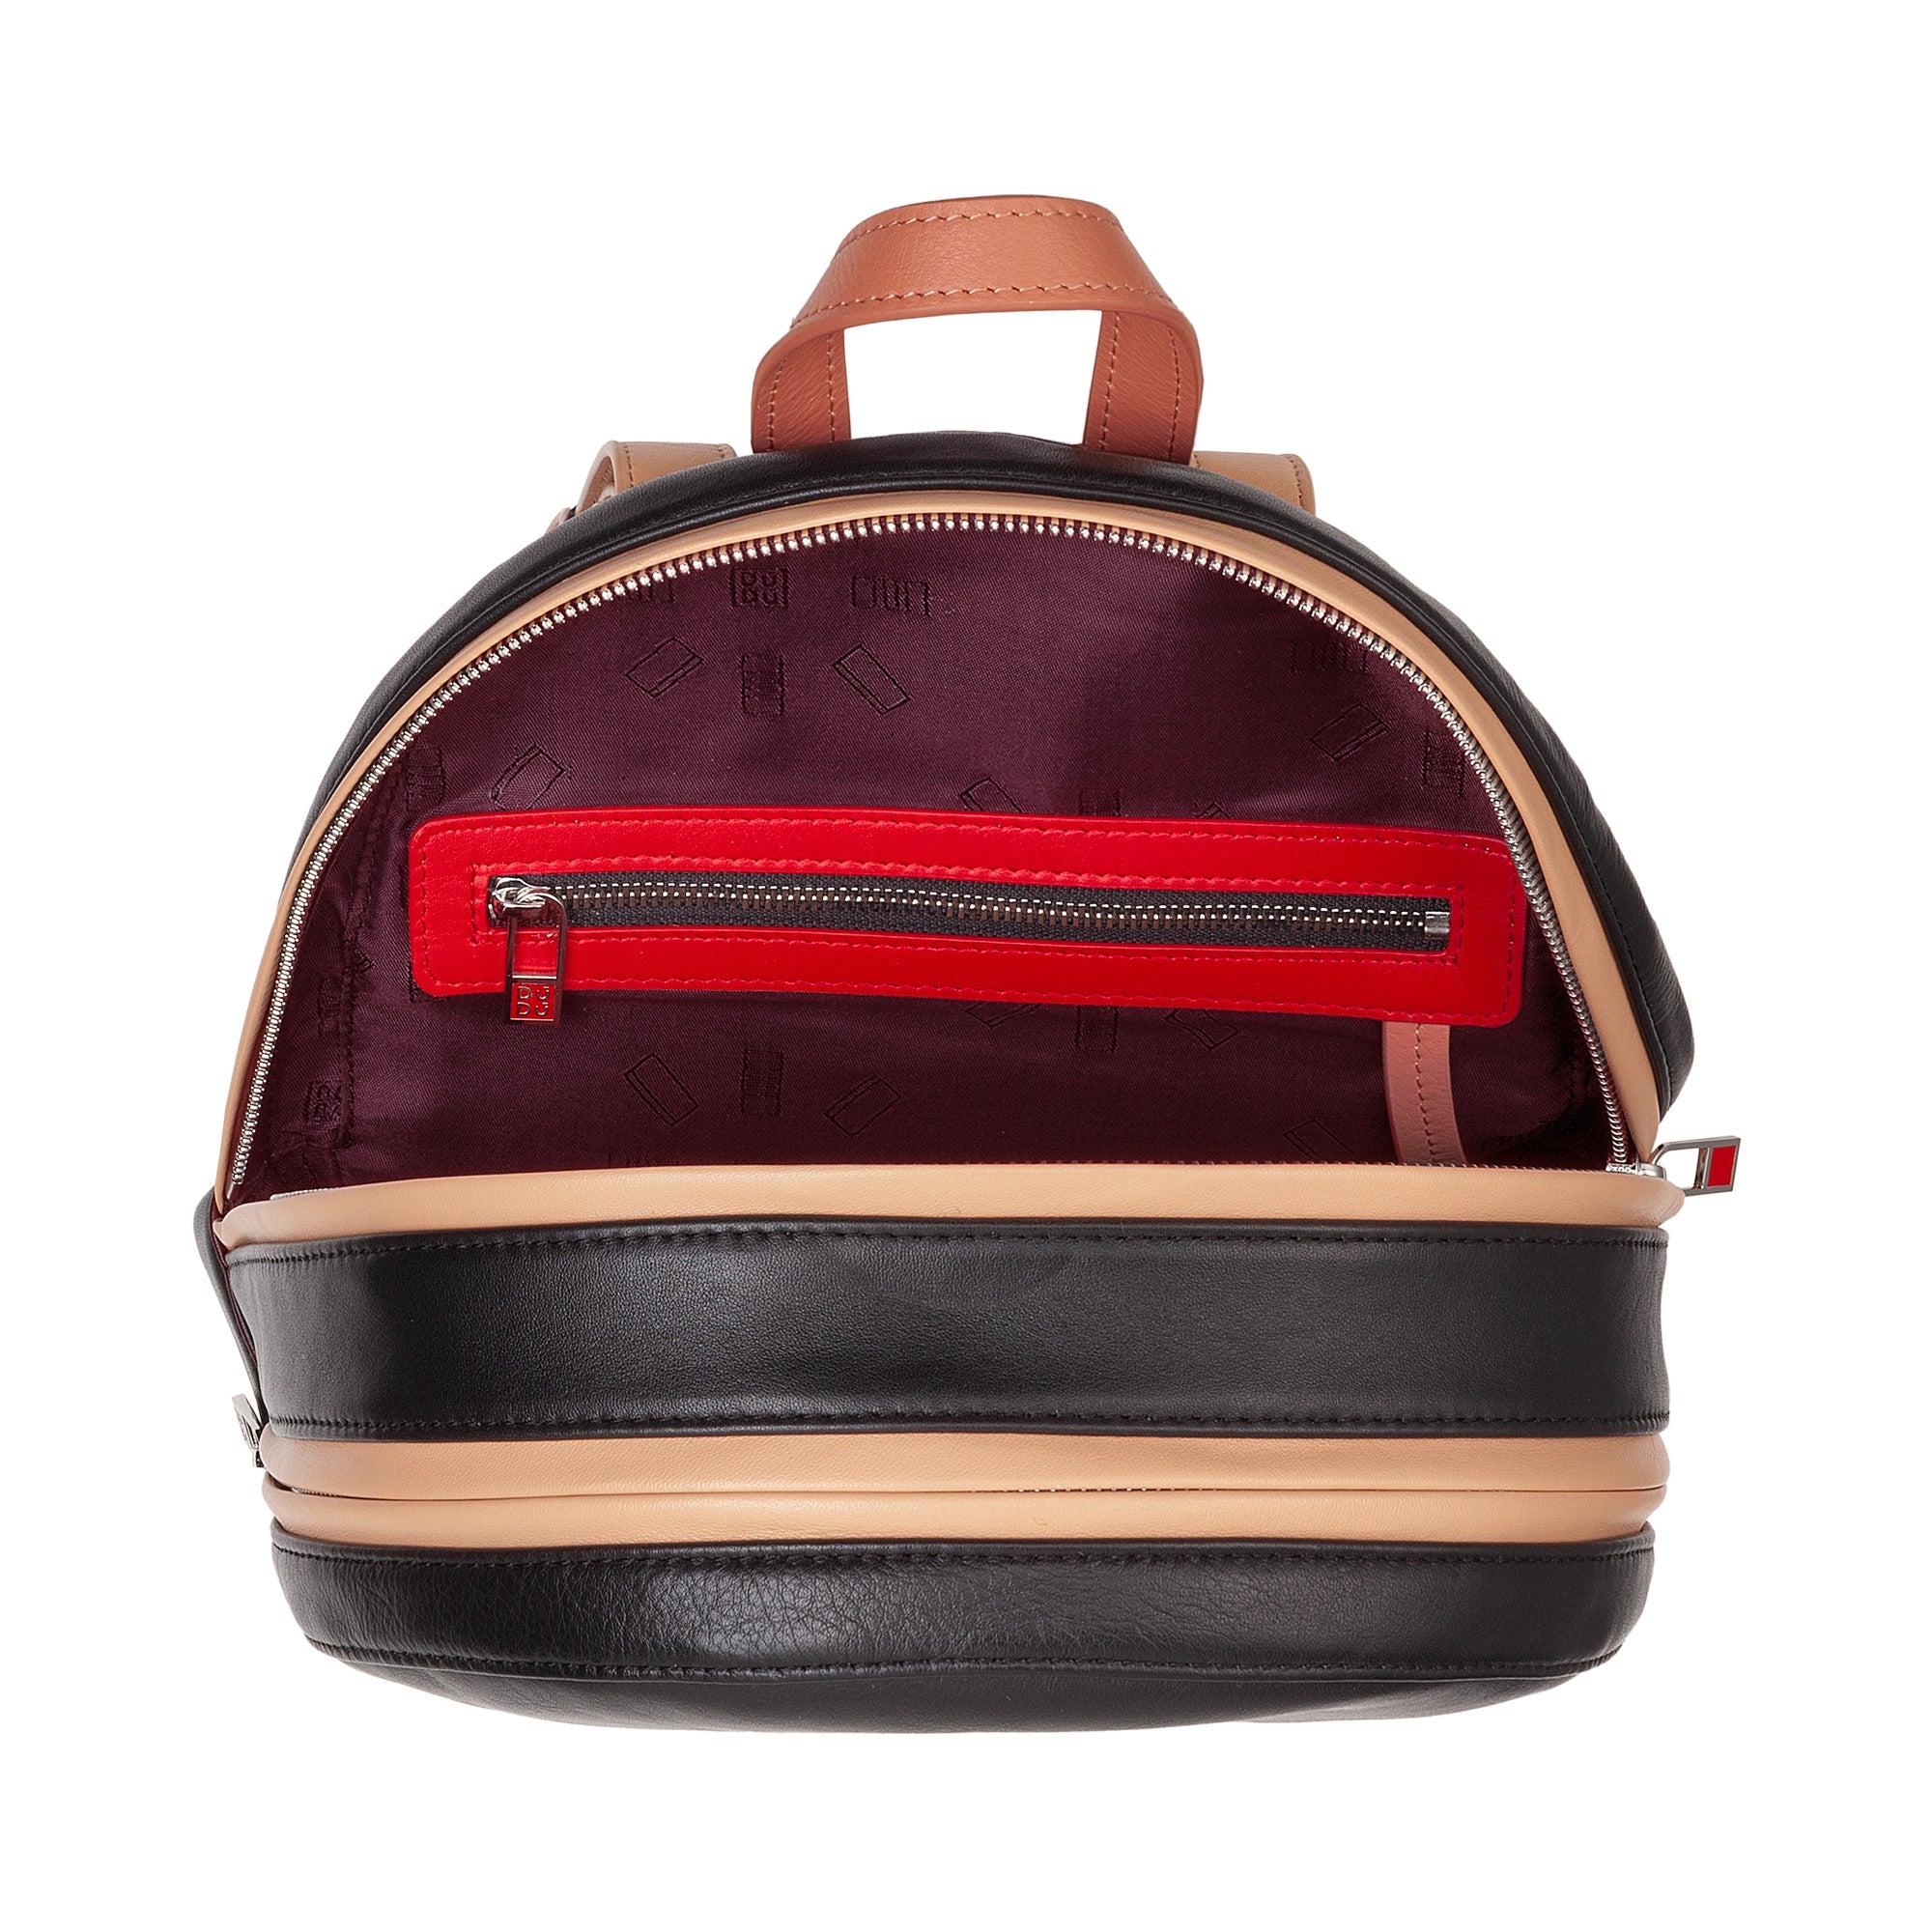 DuDu庐 Favignana Multicolor Leather Backpack - Fuchsia